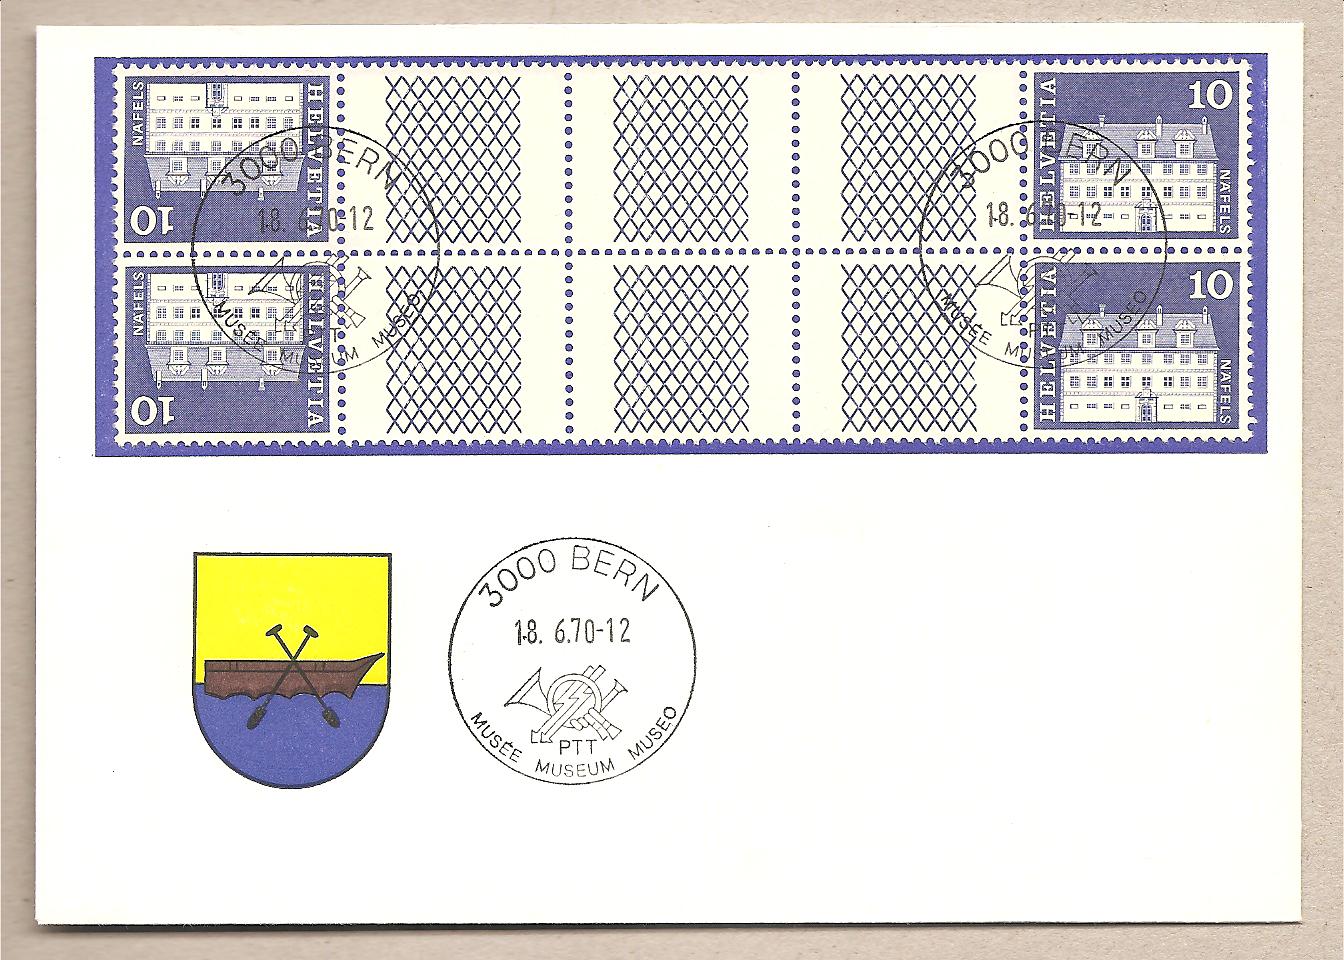 40682 - Svizzera - busta con annulli speciali con interspazi 3spazi vuoti a 8 linee a croce - 1970 * G